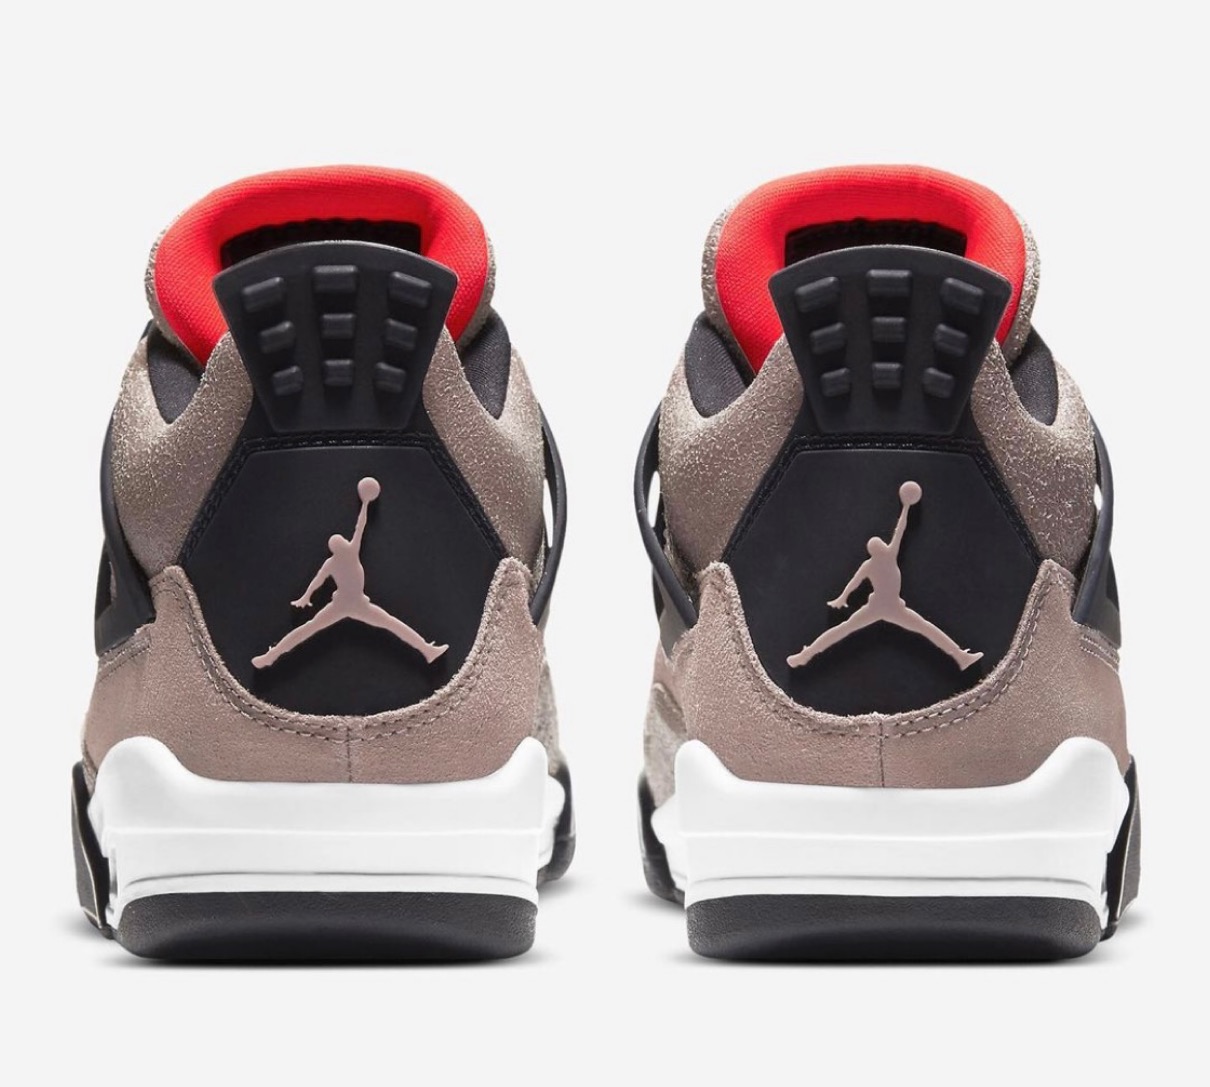 Nike】Air Jordan 4 Retro “Taupe Haze”が国内2021年2月27日に発売予定 